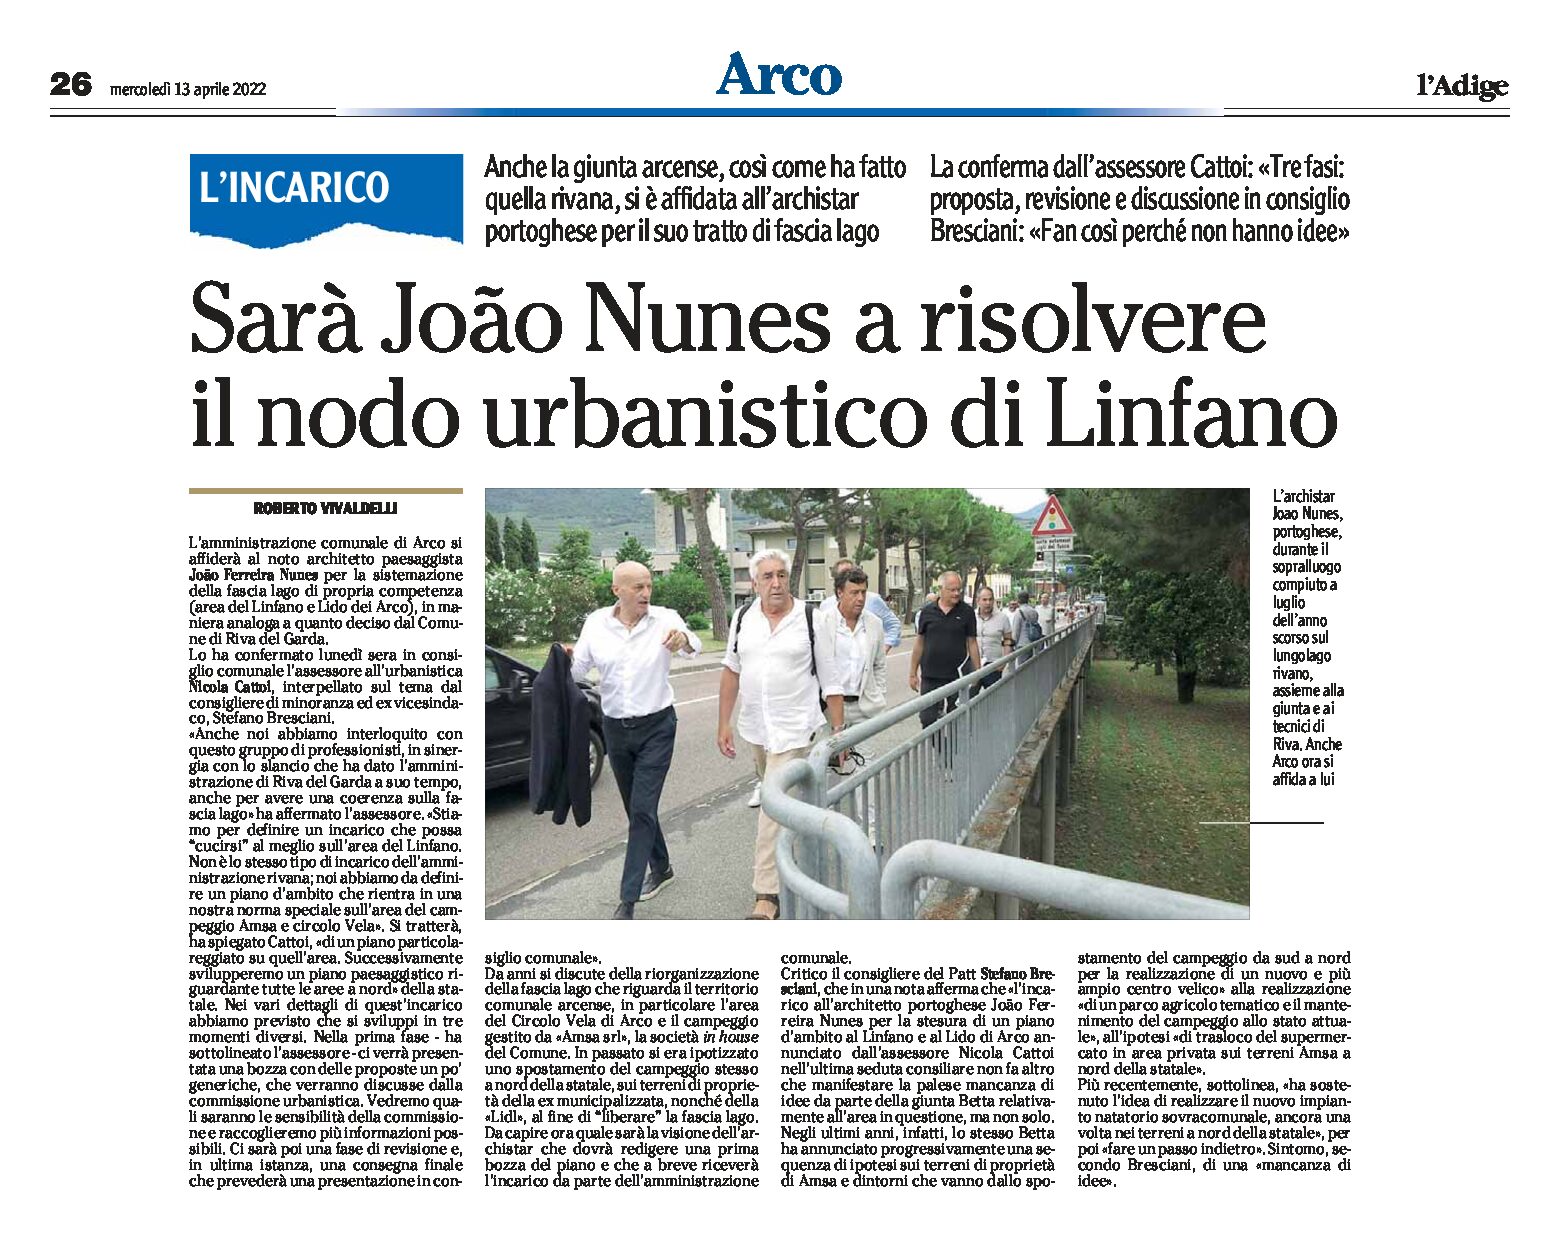 Arco: sarà Nunes a risolvere il nodo urbanistico di Linfano